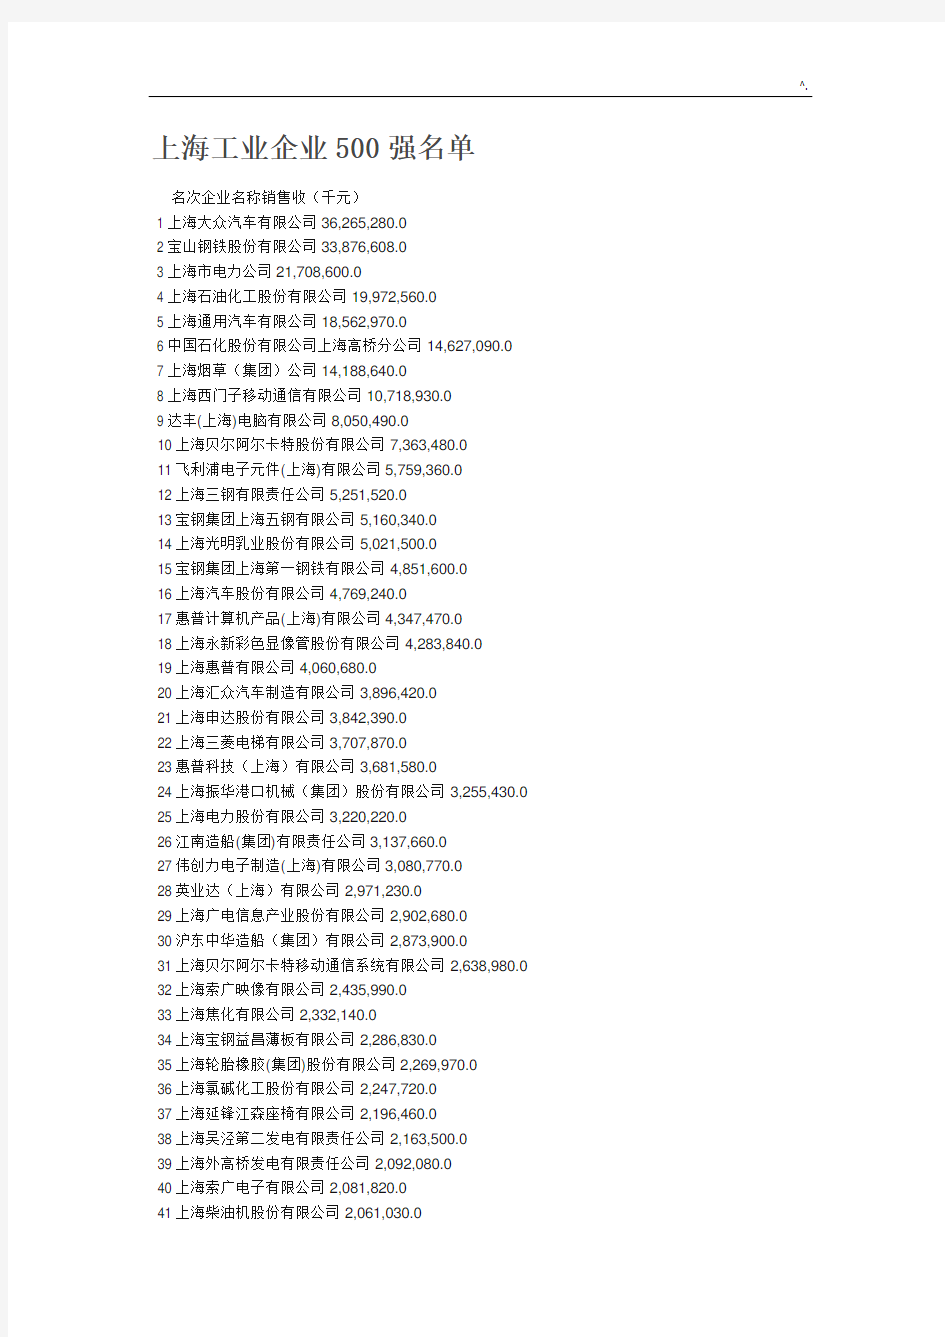 上海工业集团公司500强详细名单